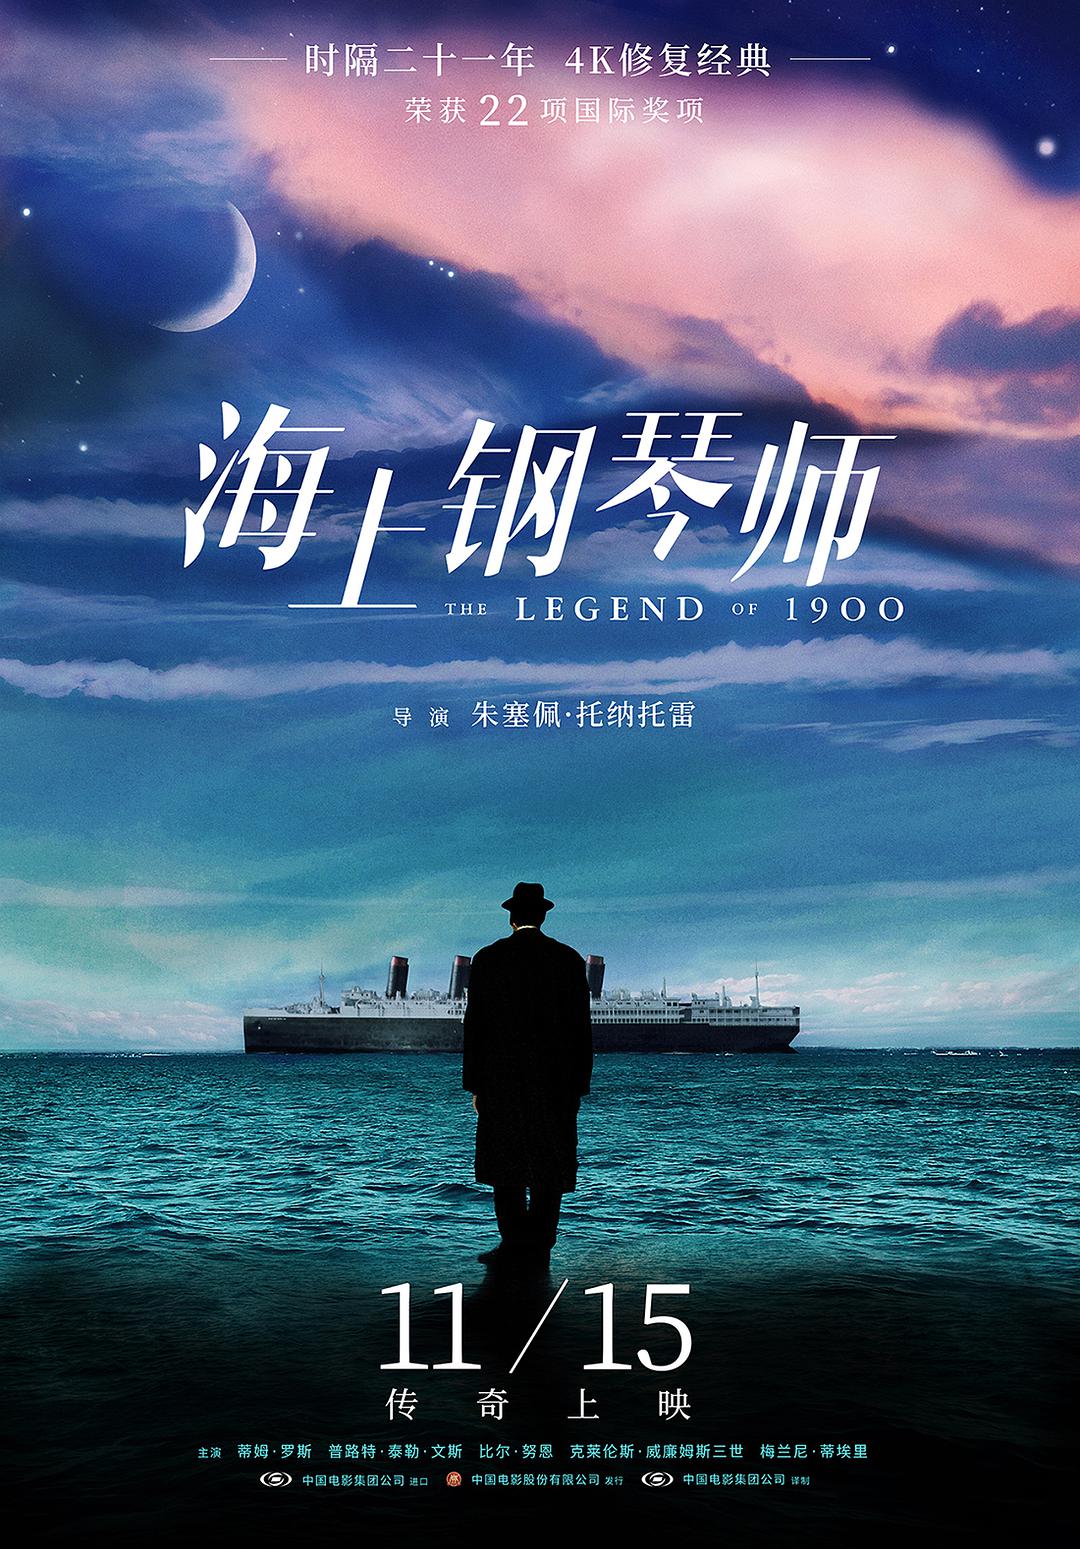 海上钢琴师 The.Legend.of.1900.1998.1080p.BluRay.REMUX.VC-1.DTS-HD.MA.5.1-FGT 33.42GB